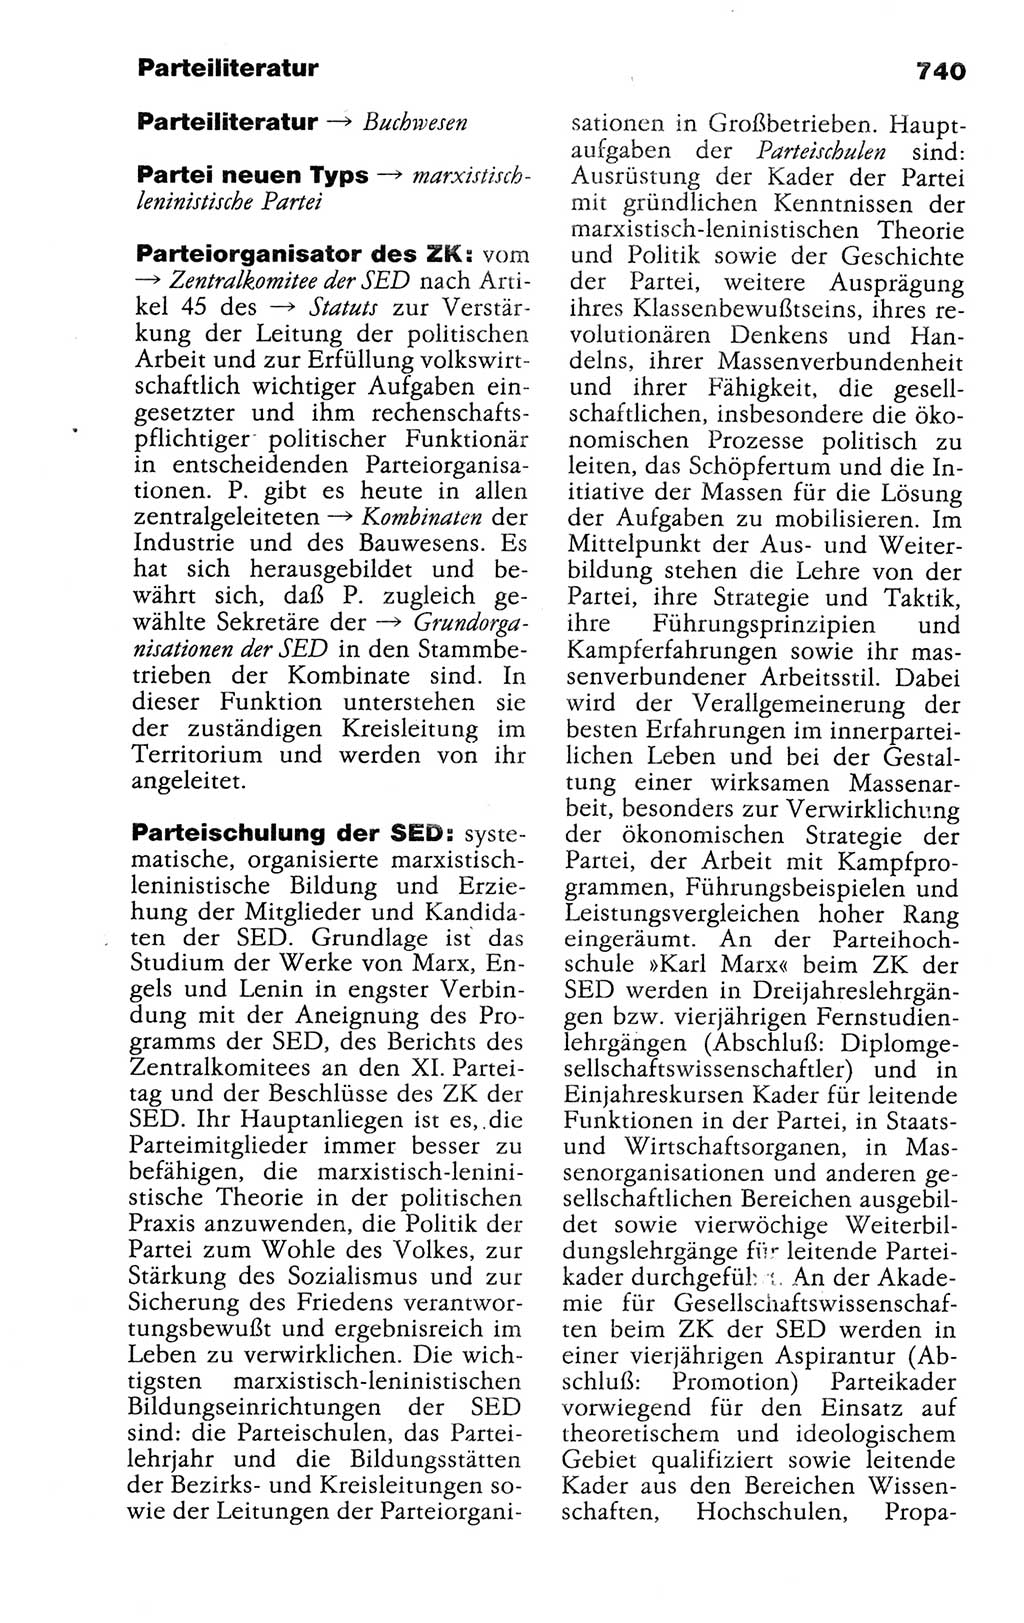 Kleines politisches Wörterbuch [Deutsche Demokratische Republik (DDR)] 1988, Seite 740 (Kl. pol. Wb. DDR 1988, S. 740)